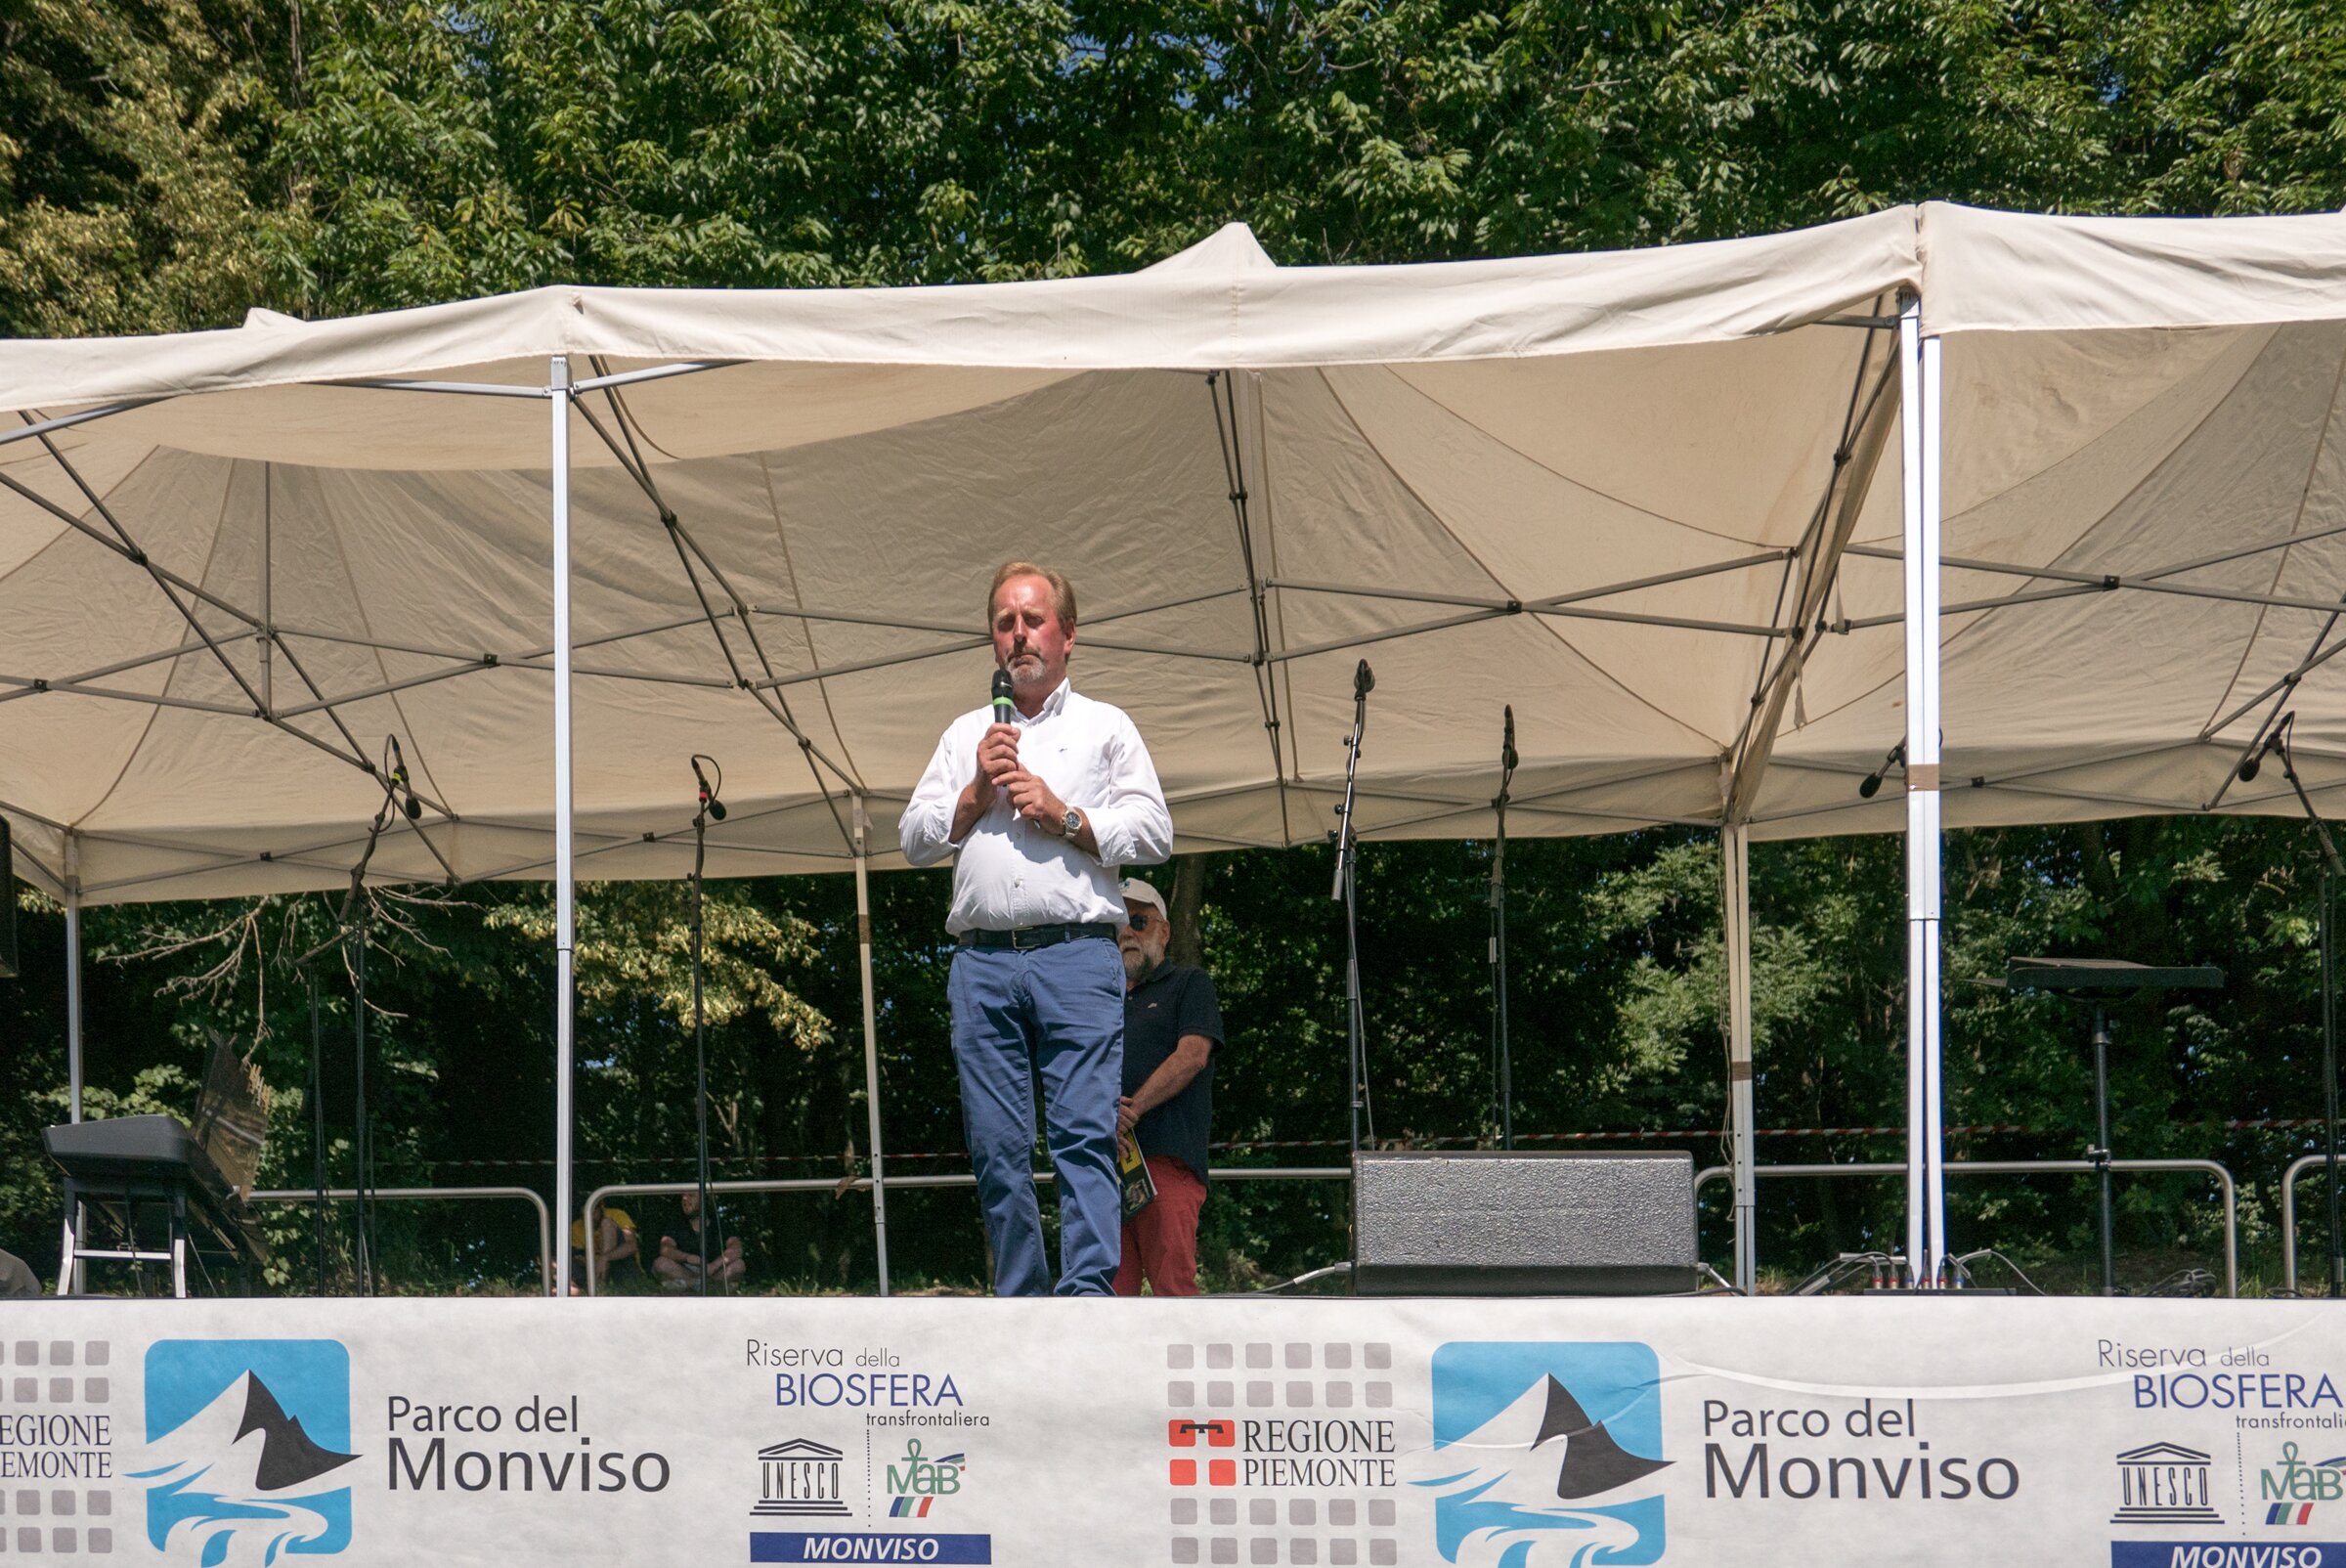 su un palco con striscioni del Parco del Monviso, il presidente Dario Miretti in camicia sta parlando ad un microfono